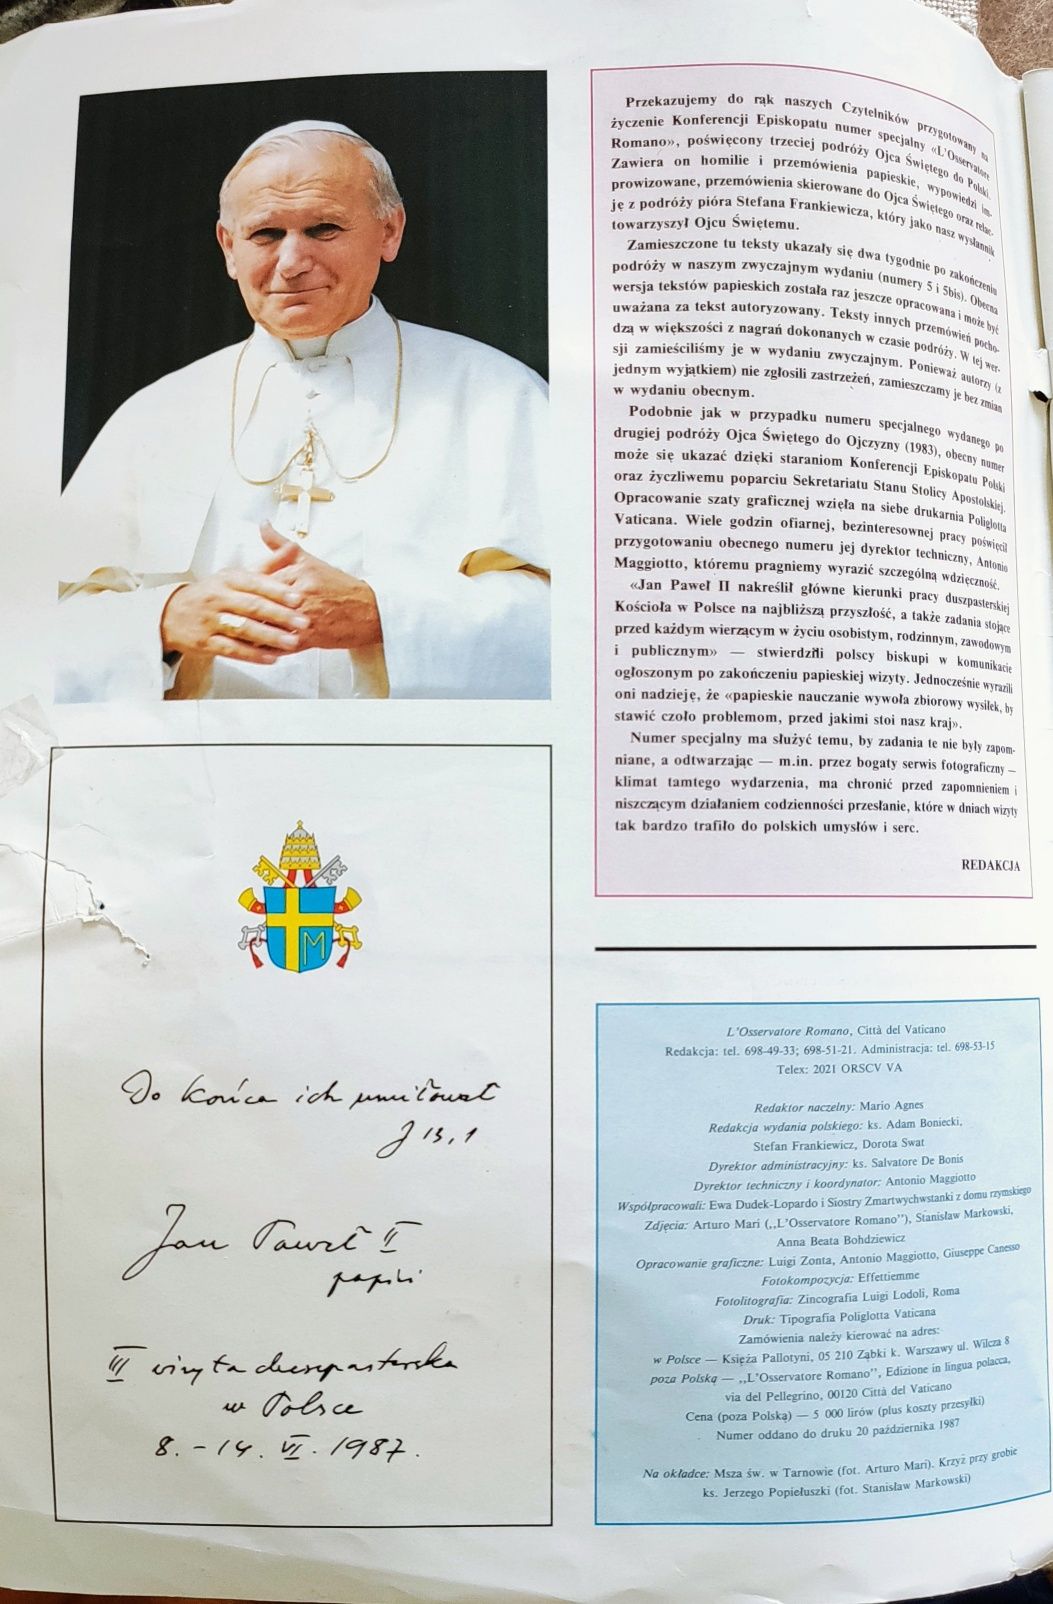 L'Osservatore Romano wyd.polskie 3 wizyta J.P. II